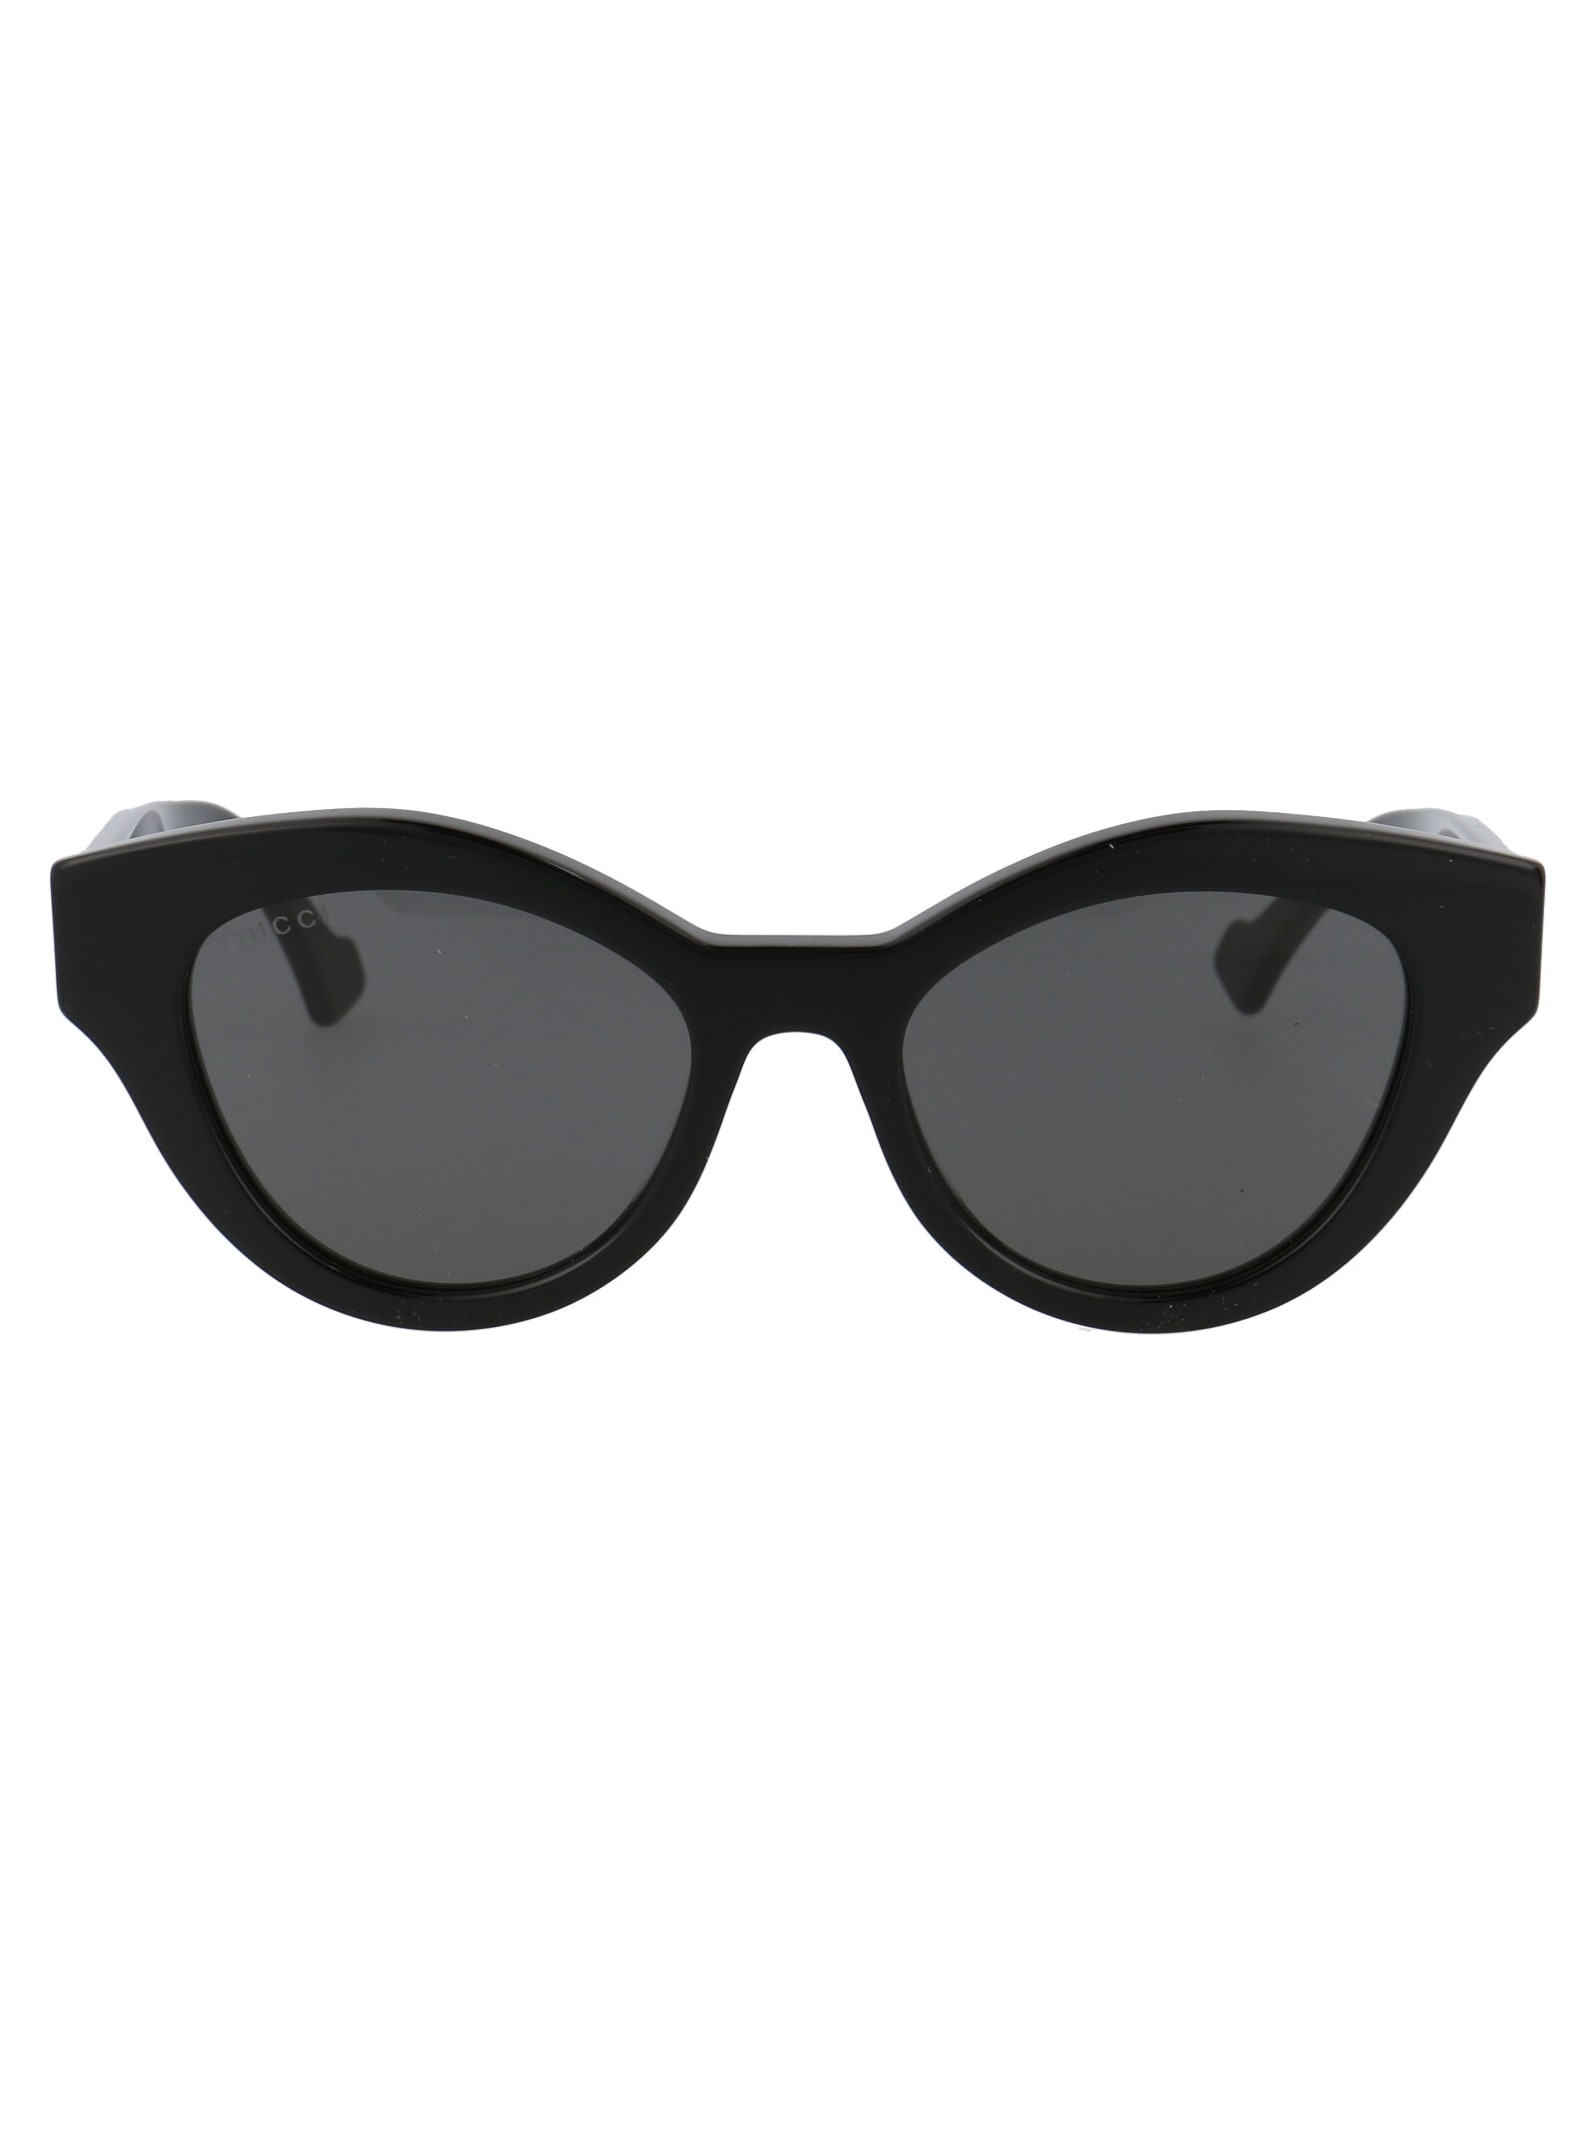 Gucci Gg0957s Sunglasses In 002 Black Black Grey